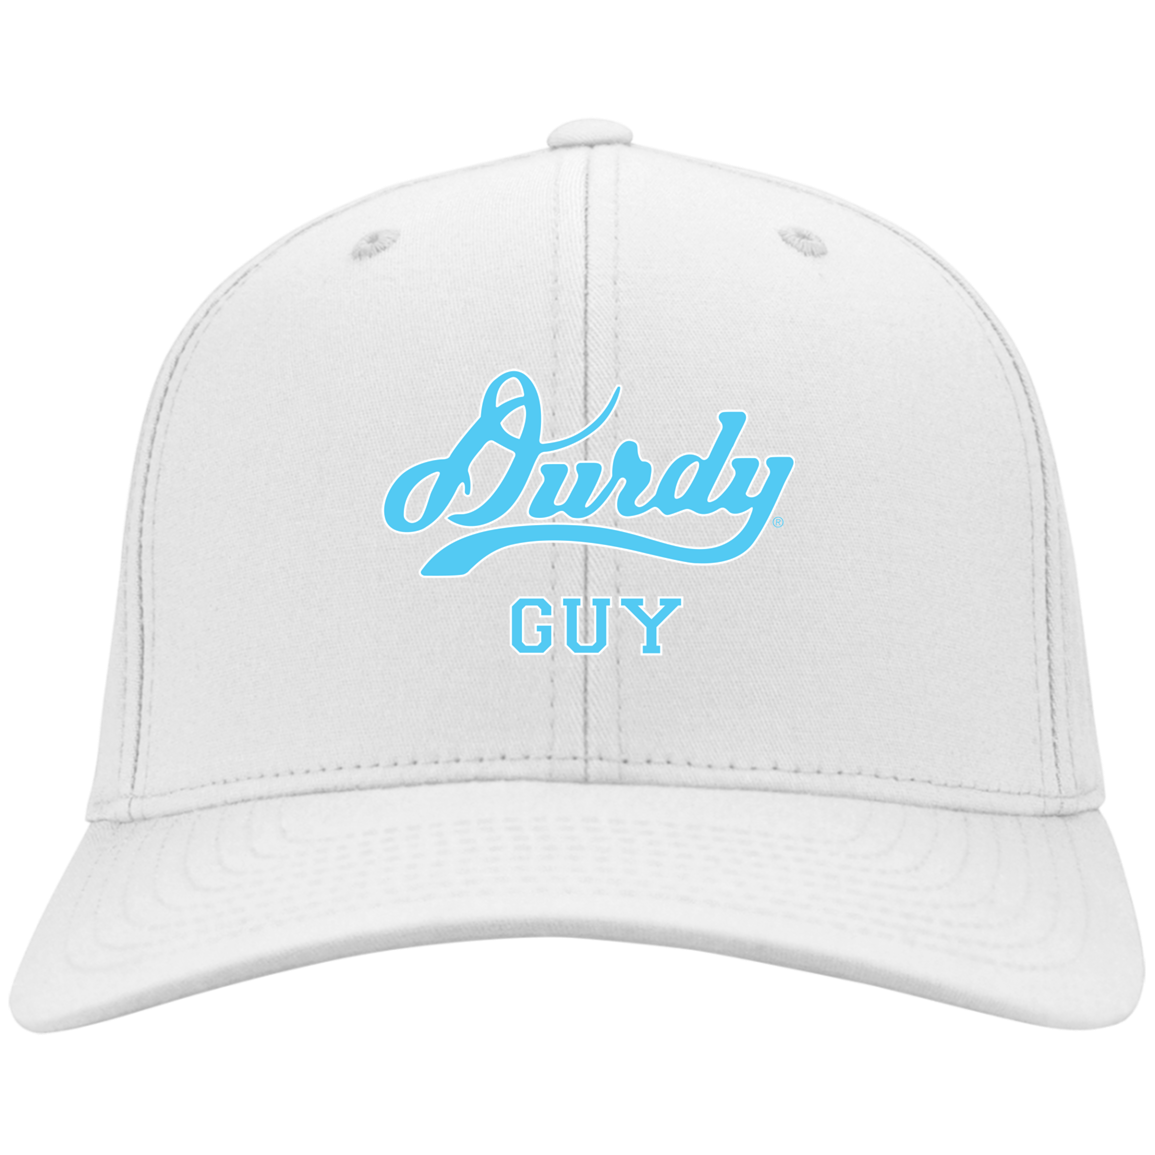 Durdy Guy Port & Co. Twill Cap